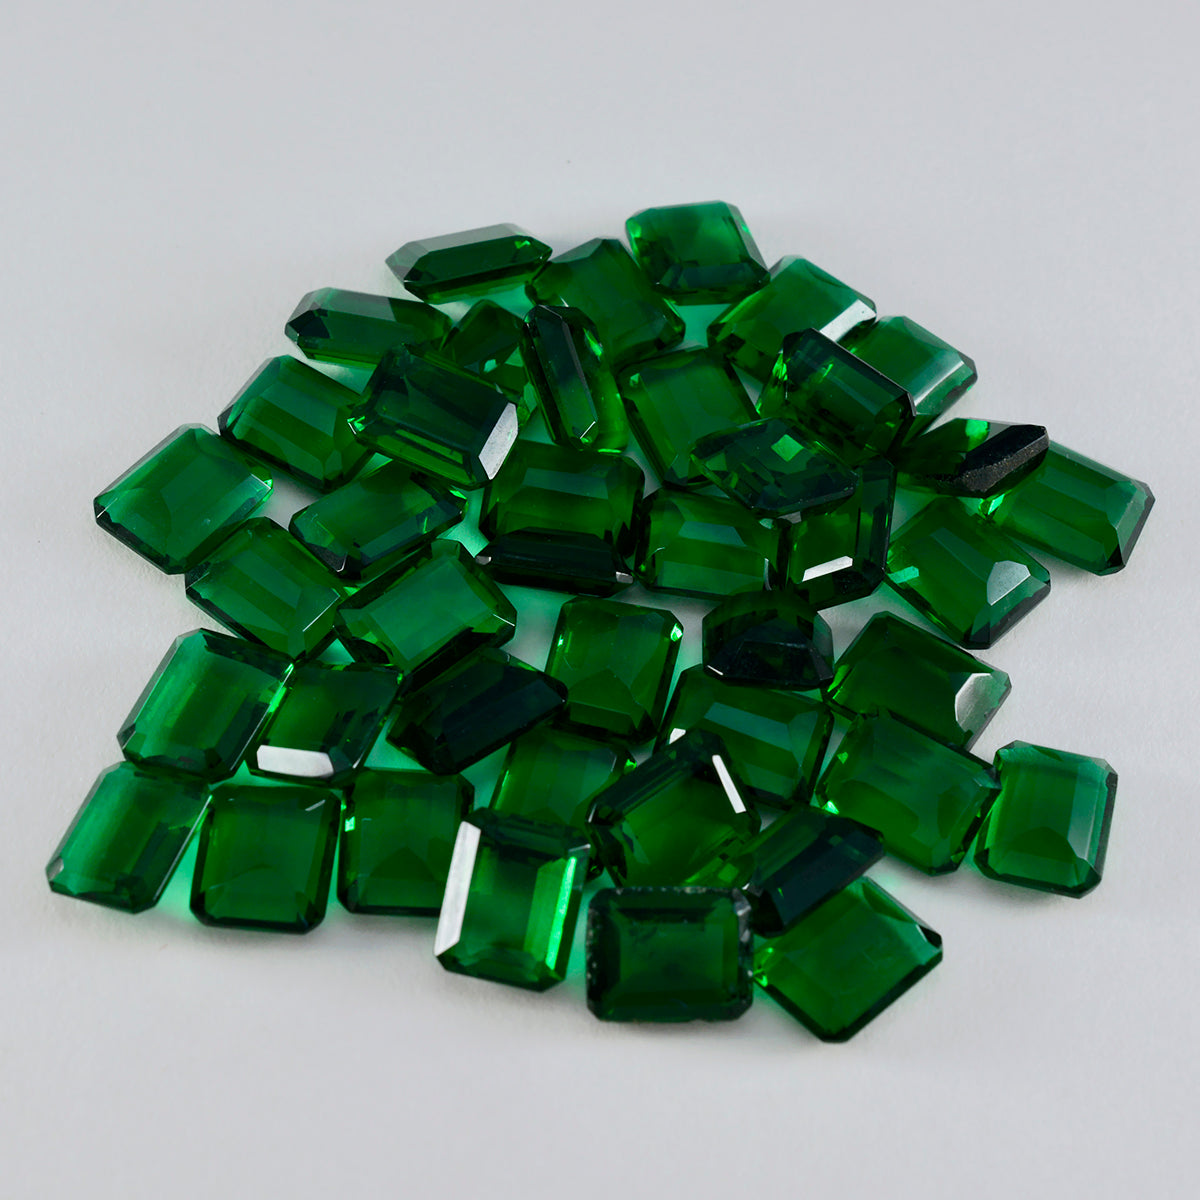 riyogems 1pc verde smeraldo cz sfaccettato 6x8 mm forma ottagonale pietra preziosa sciolta di buona qualità